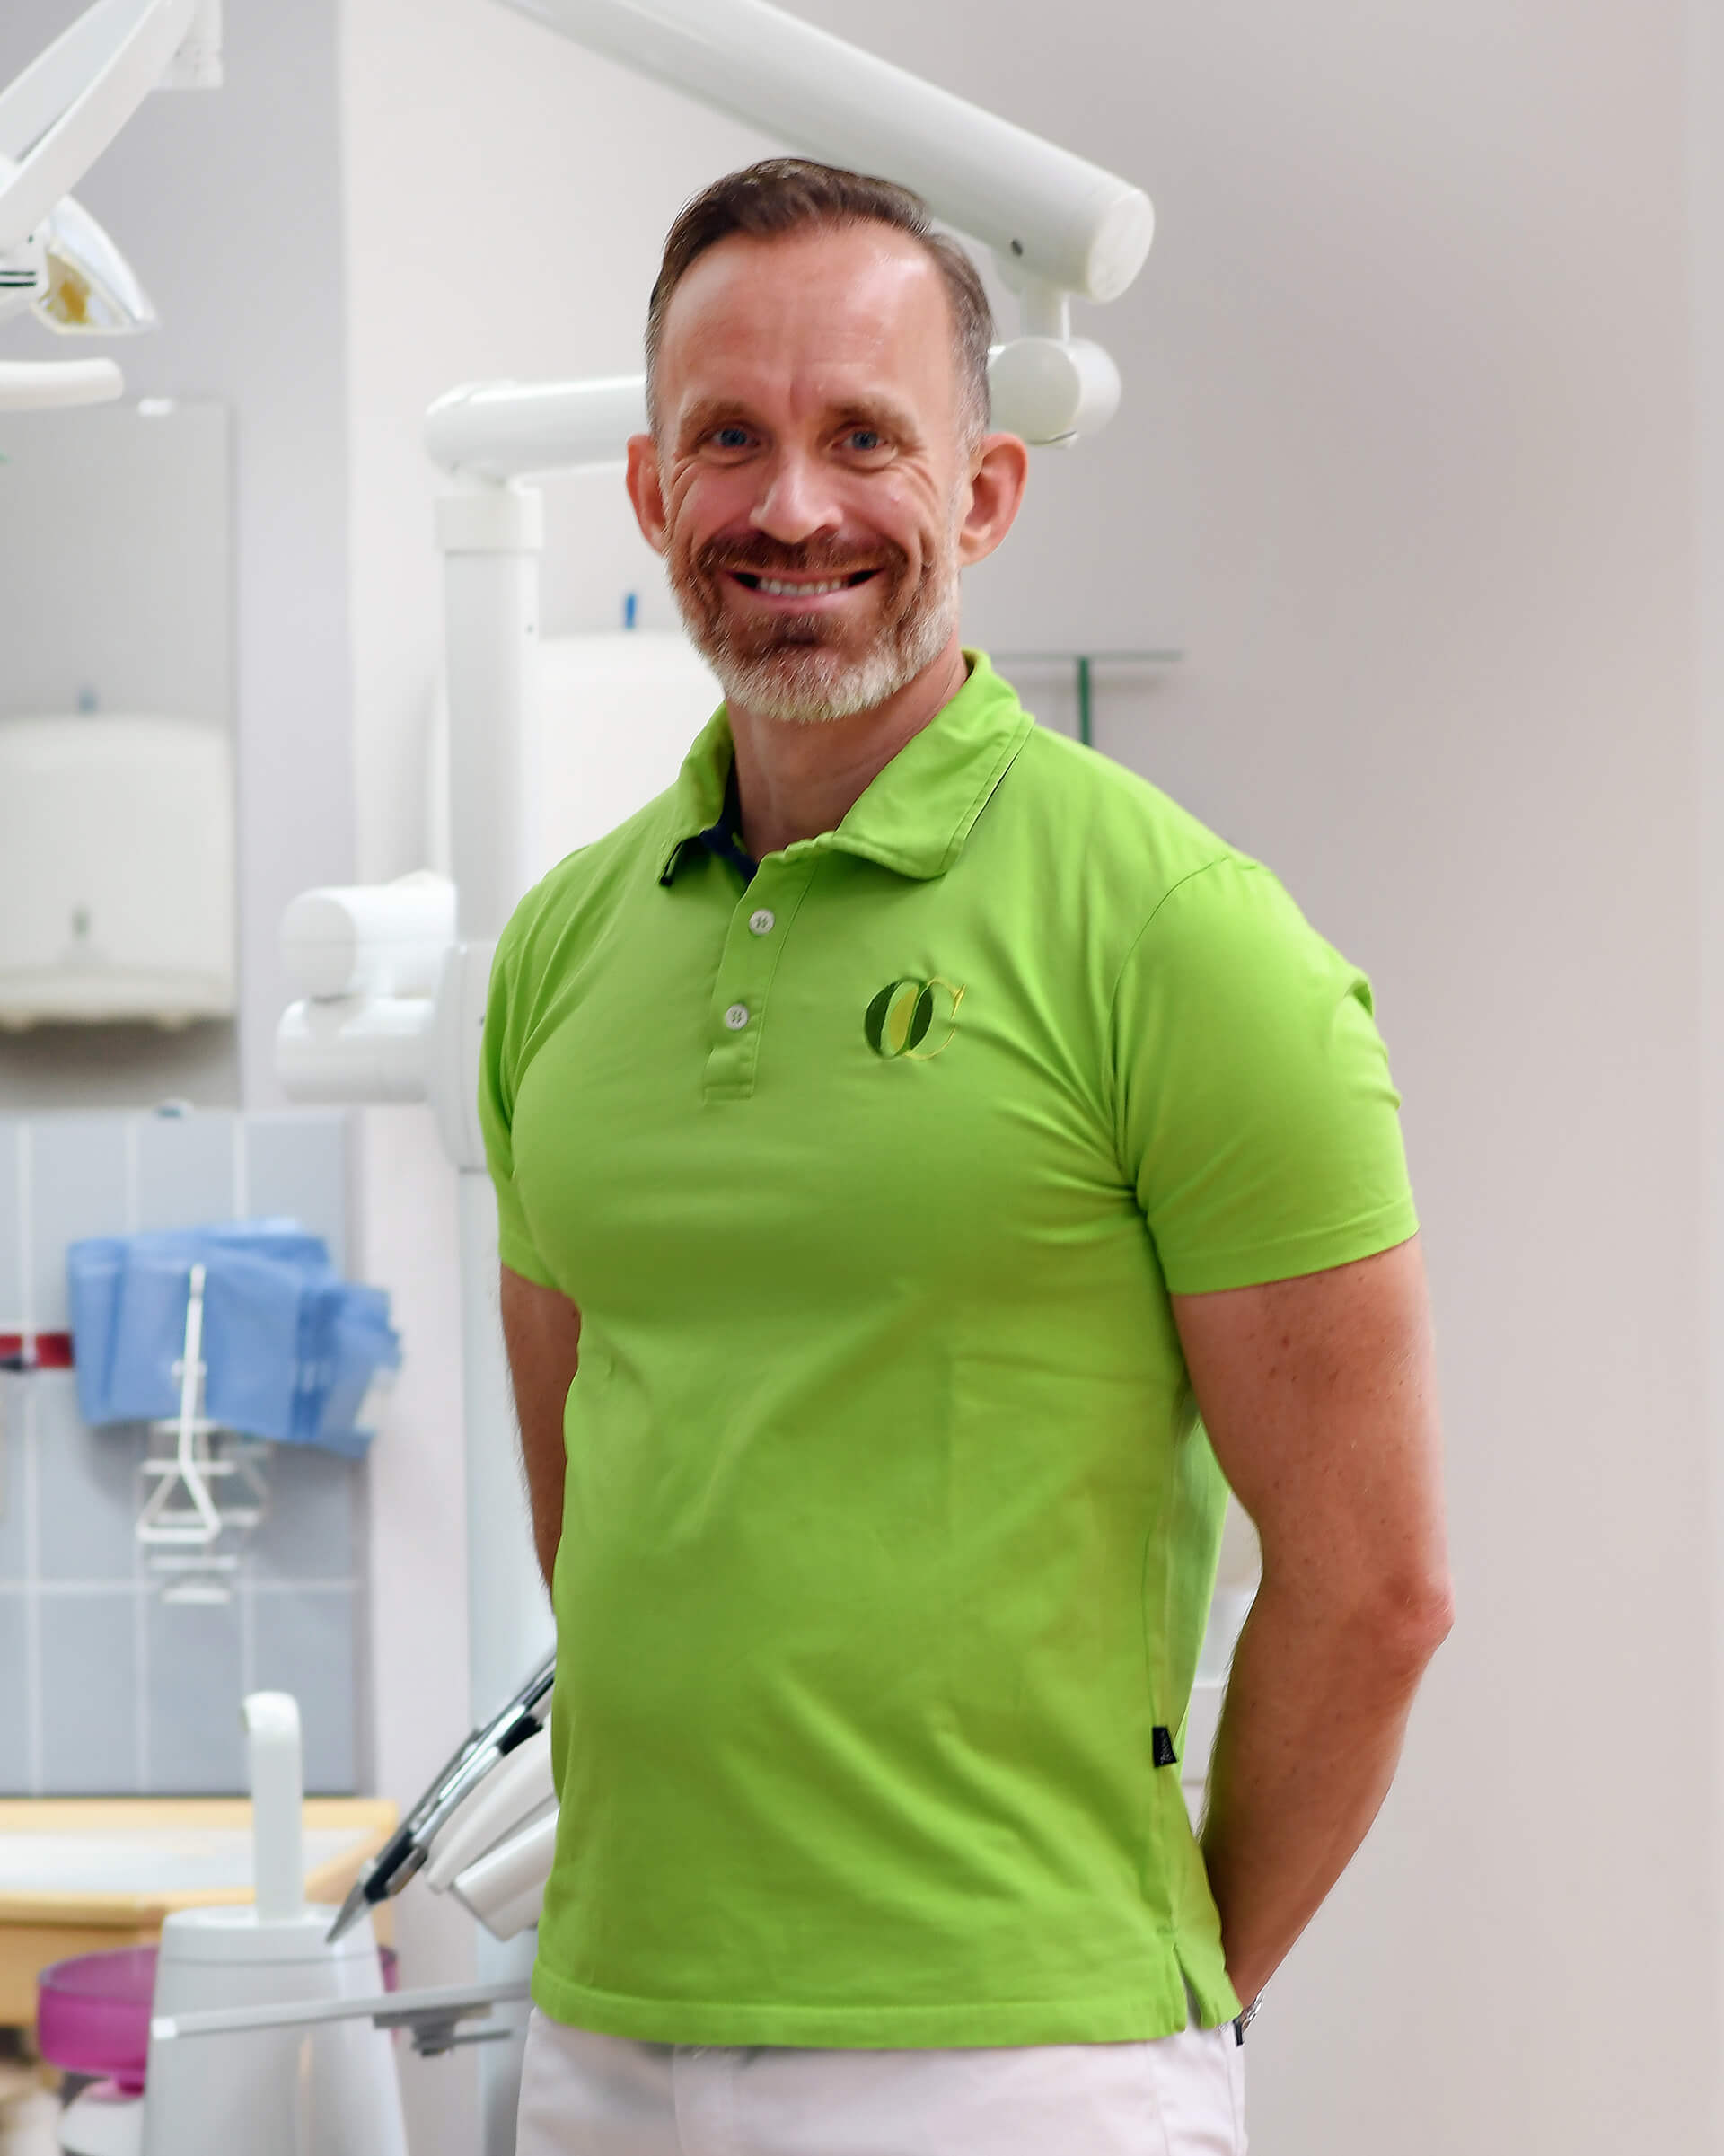 Gustaf Wiklund står i ett behandlingsrum, han har en grön tröja på sig med Oral Cares logotyp och händerna bakom ryggen. Han ler mot kameran.